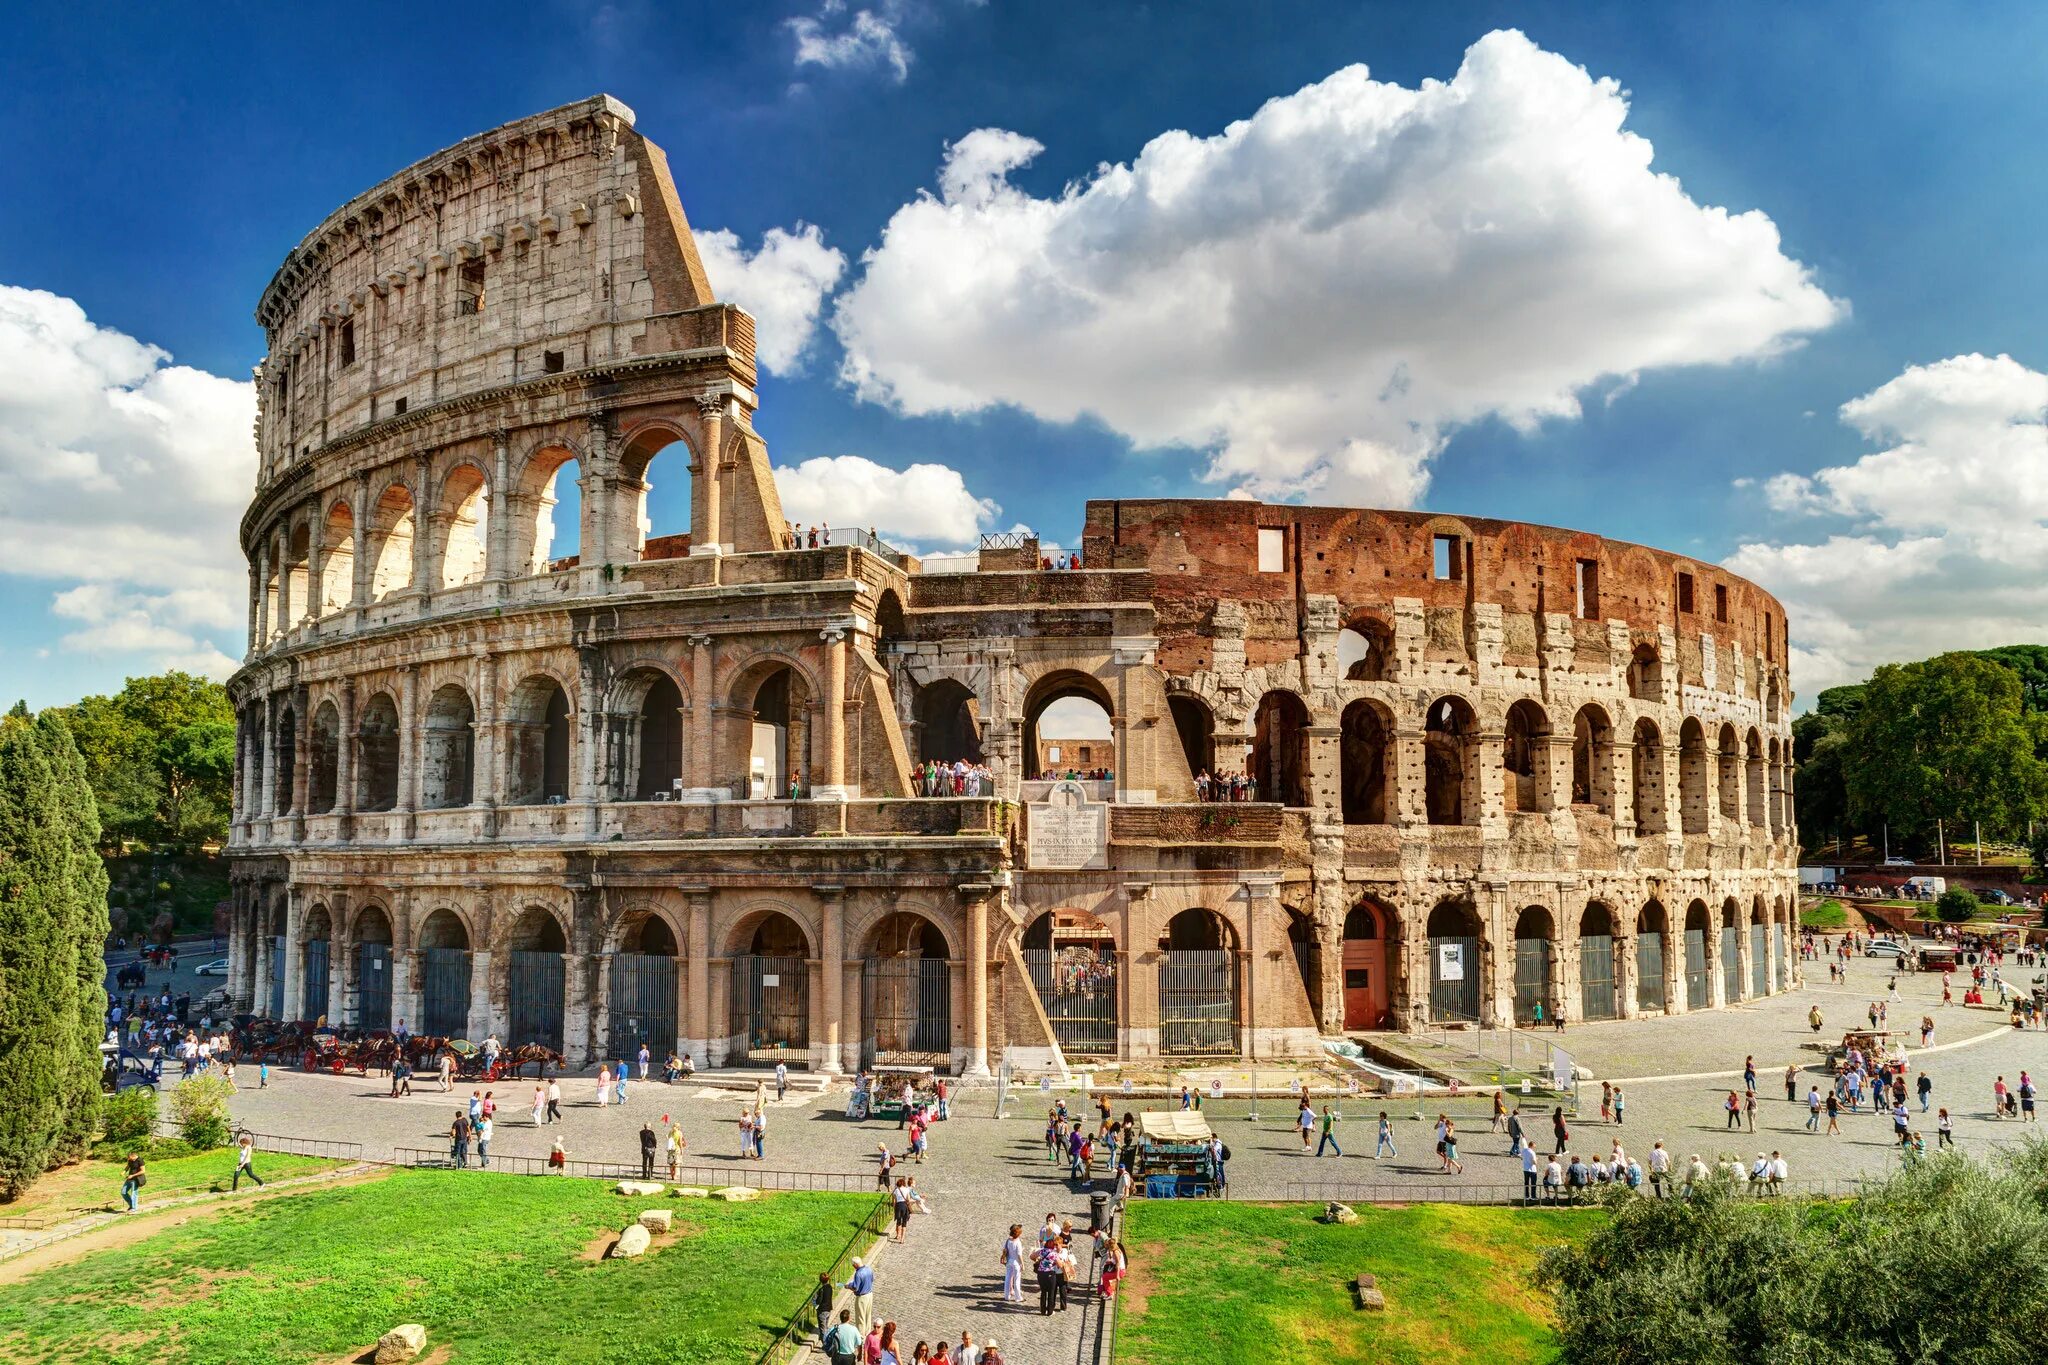 Достопримечательность какой страны является. Римский Колизей Италия. Амфитеатр Колизей в Италии. Римская Империя Колизей. Колизей, Рим, Италия (Европа).